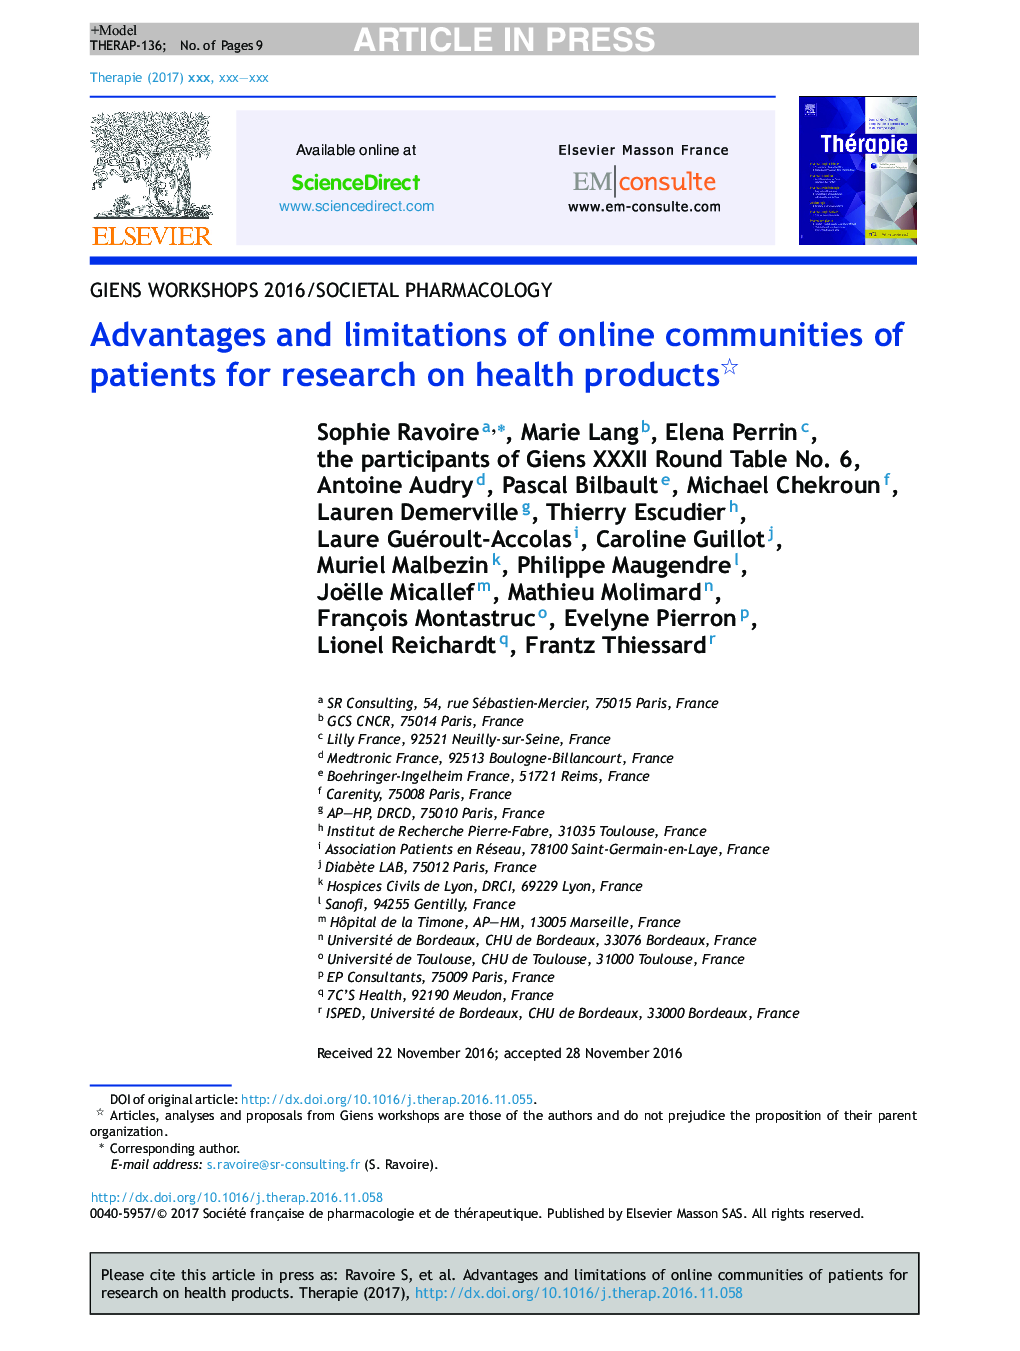 مزایا و معایب جوامع آنلاین بیماران برای تحقیق در مورد محصولات بهداشتی 